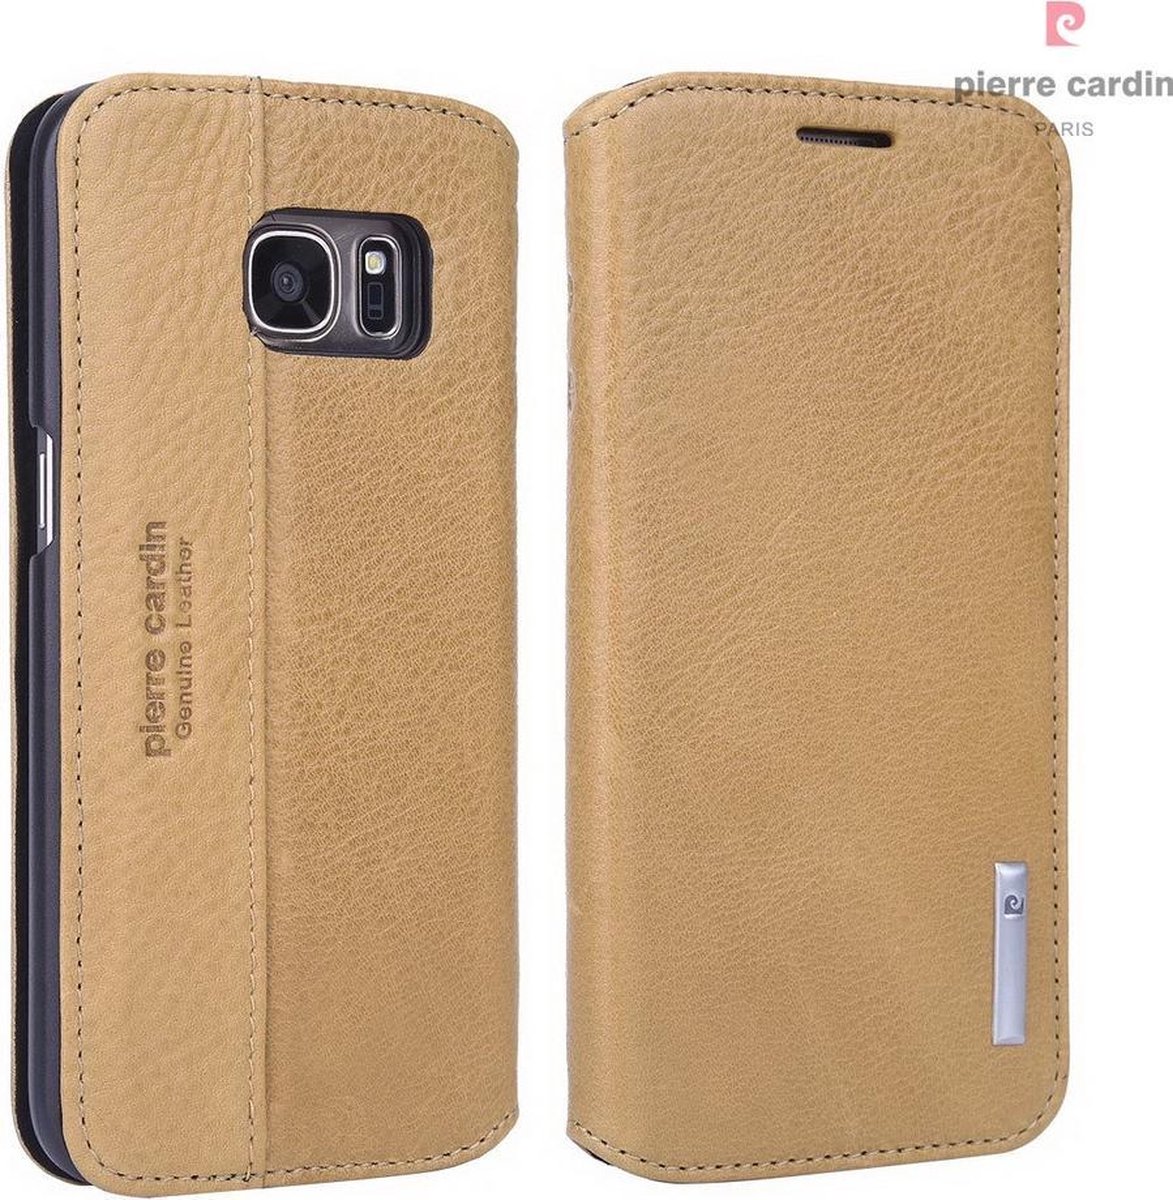 Pierre Cardin Geel hoesje Galaxy S7 - Book Case - Pasjeshouder - Magneetsluiting